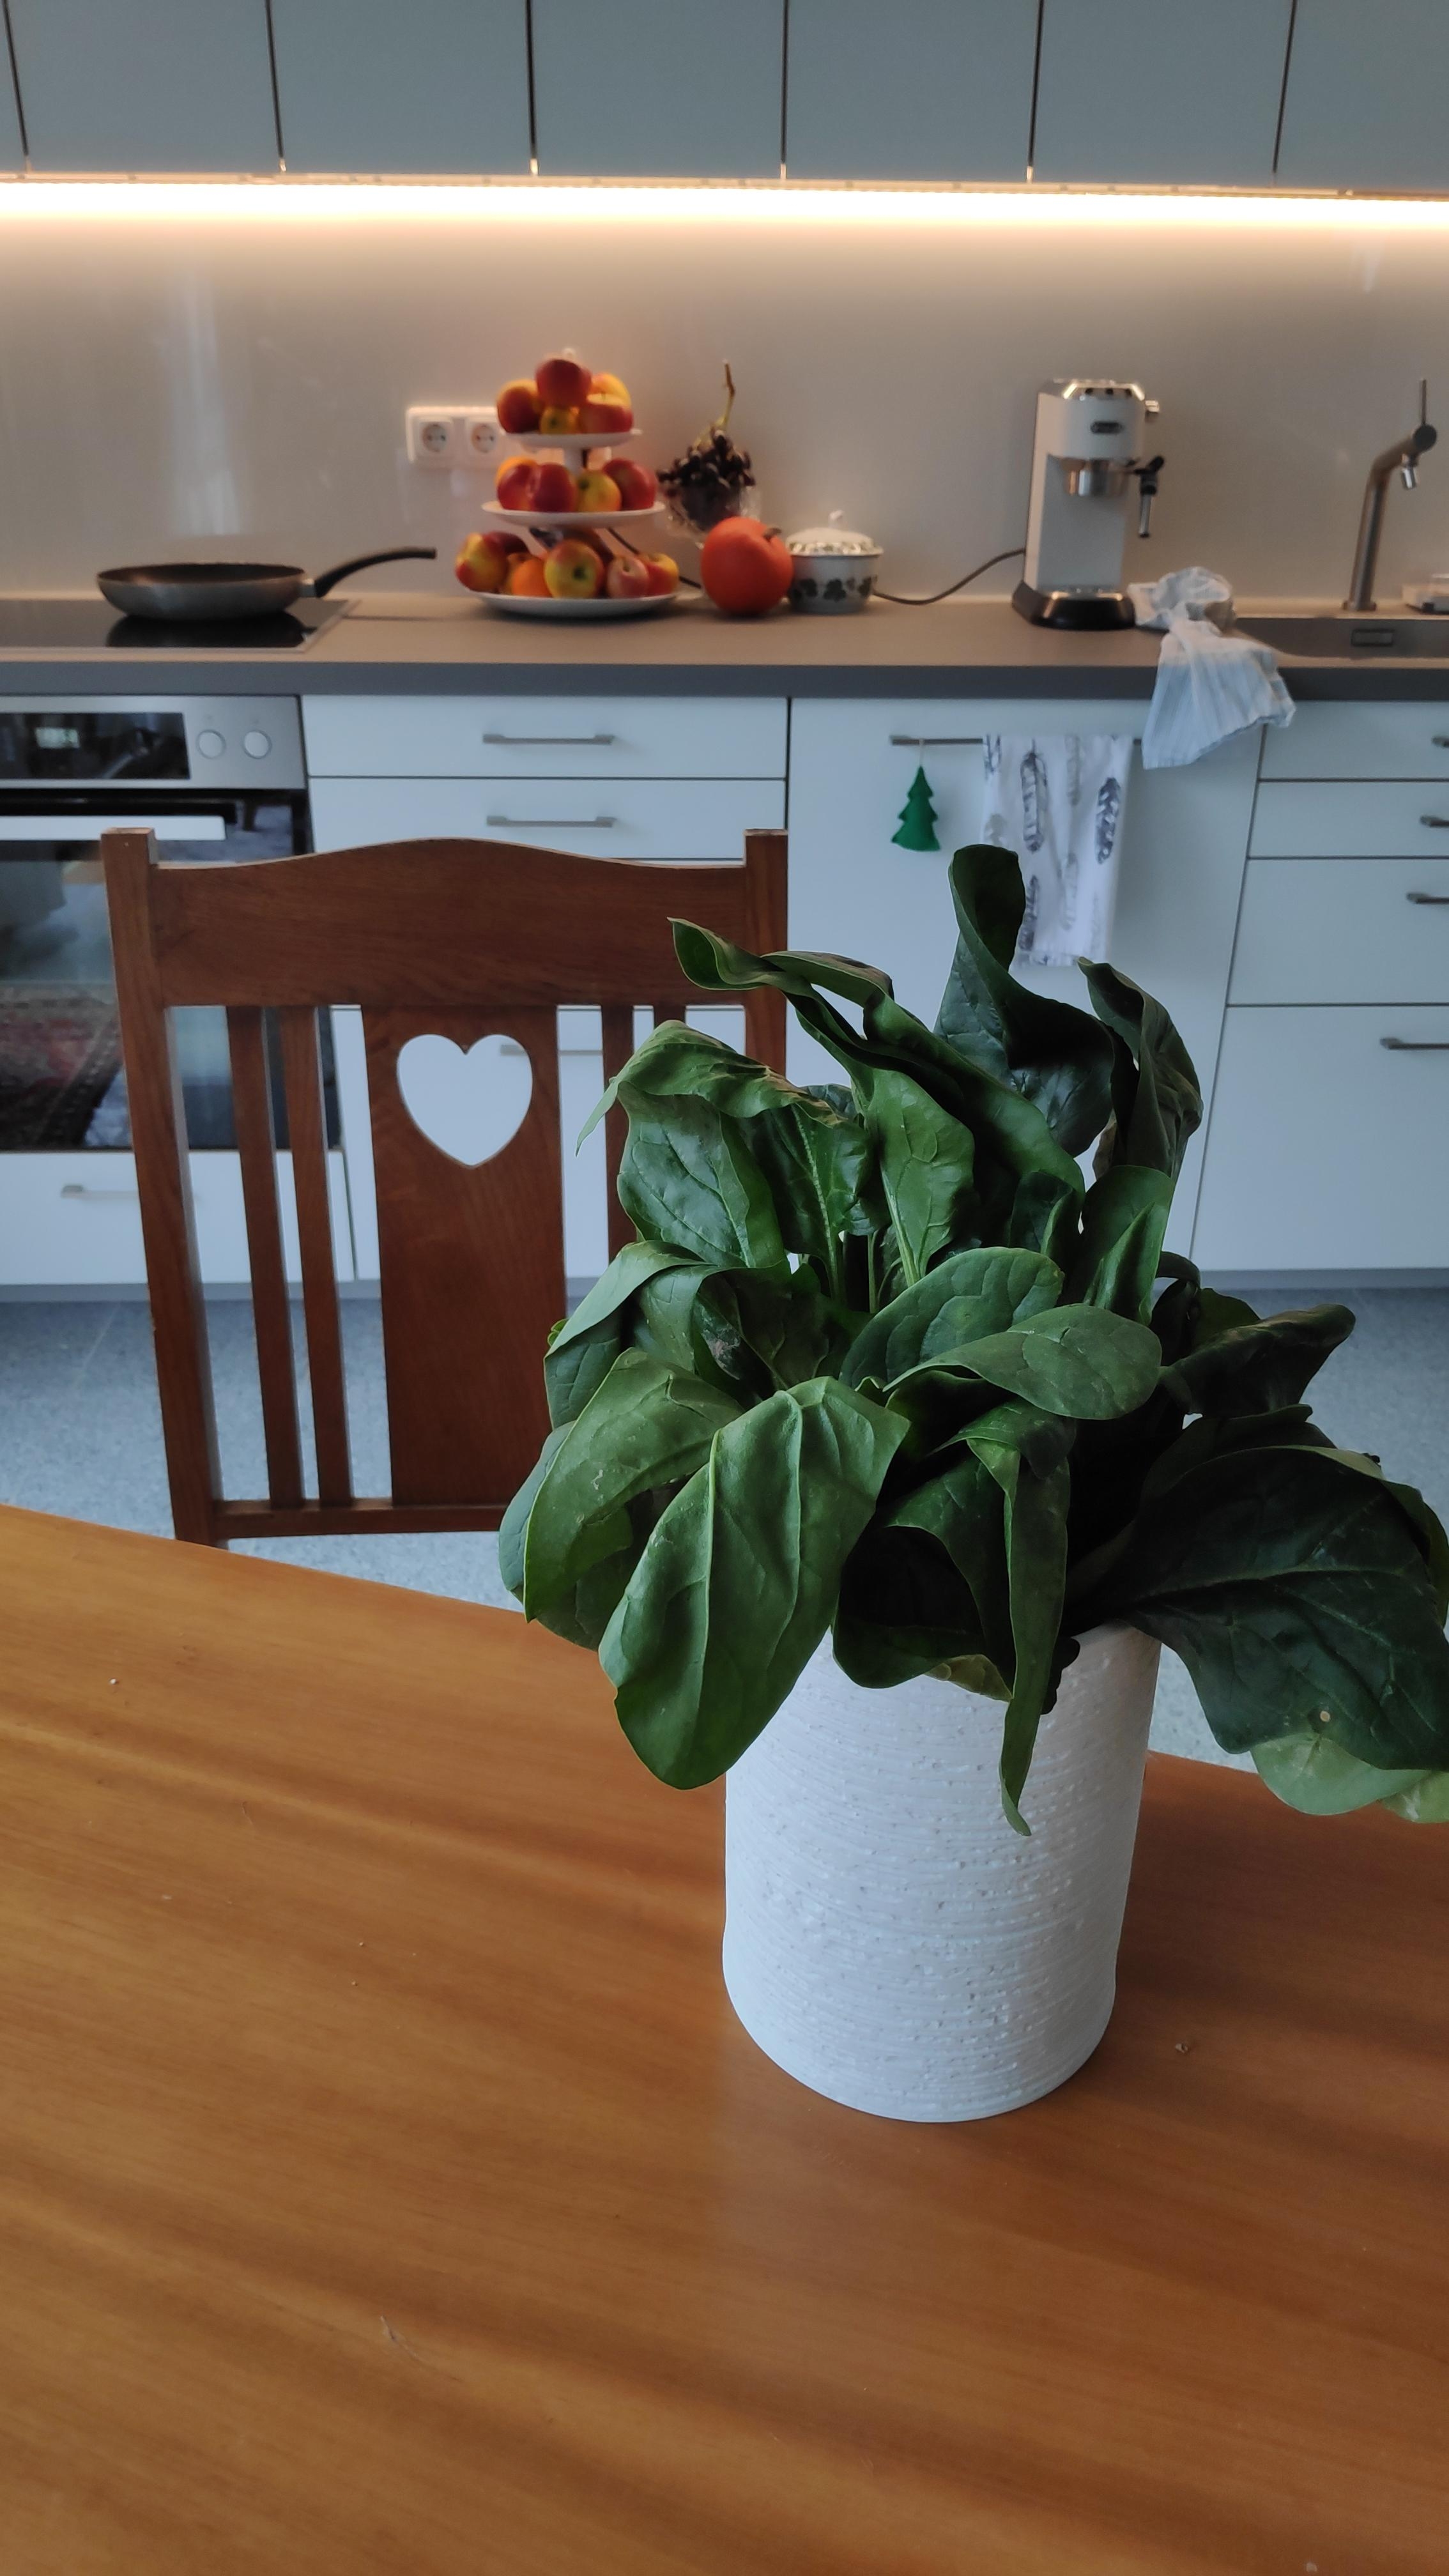 .Freshplantday mit Spinat.
#Spinat #Gemüse #Küche #Vase #Porzellan #Salat #frischesGemüse